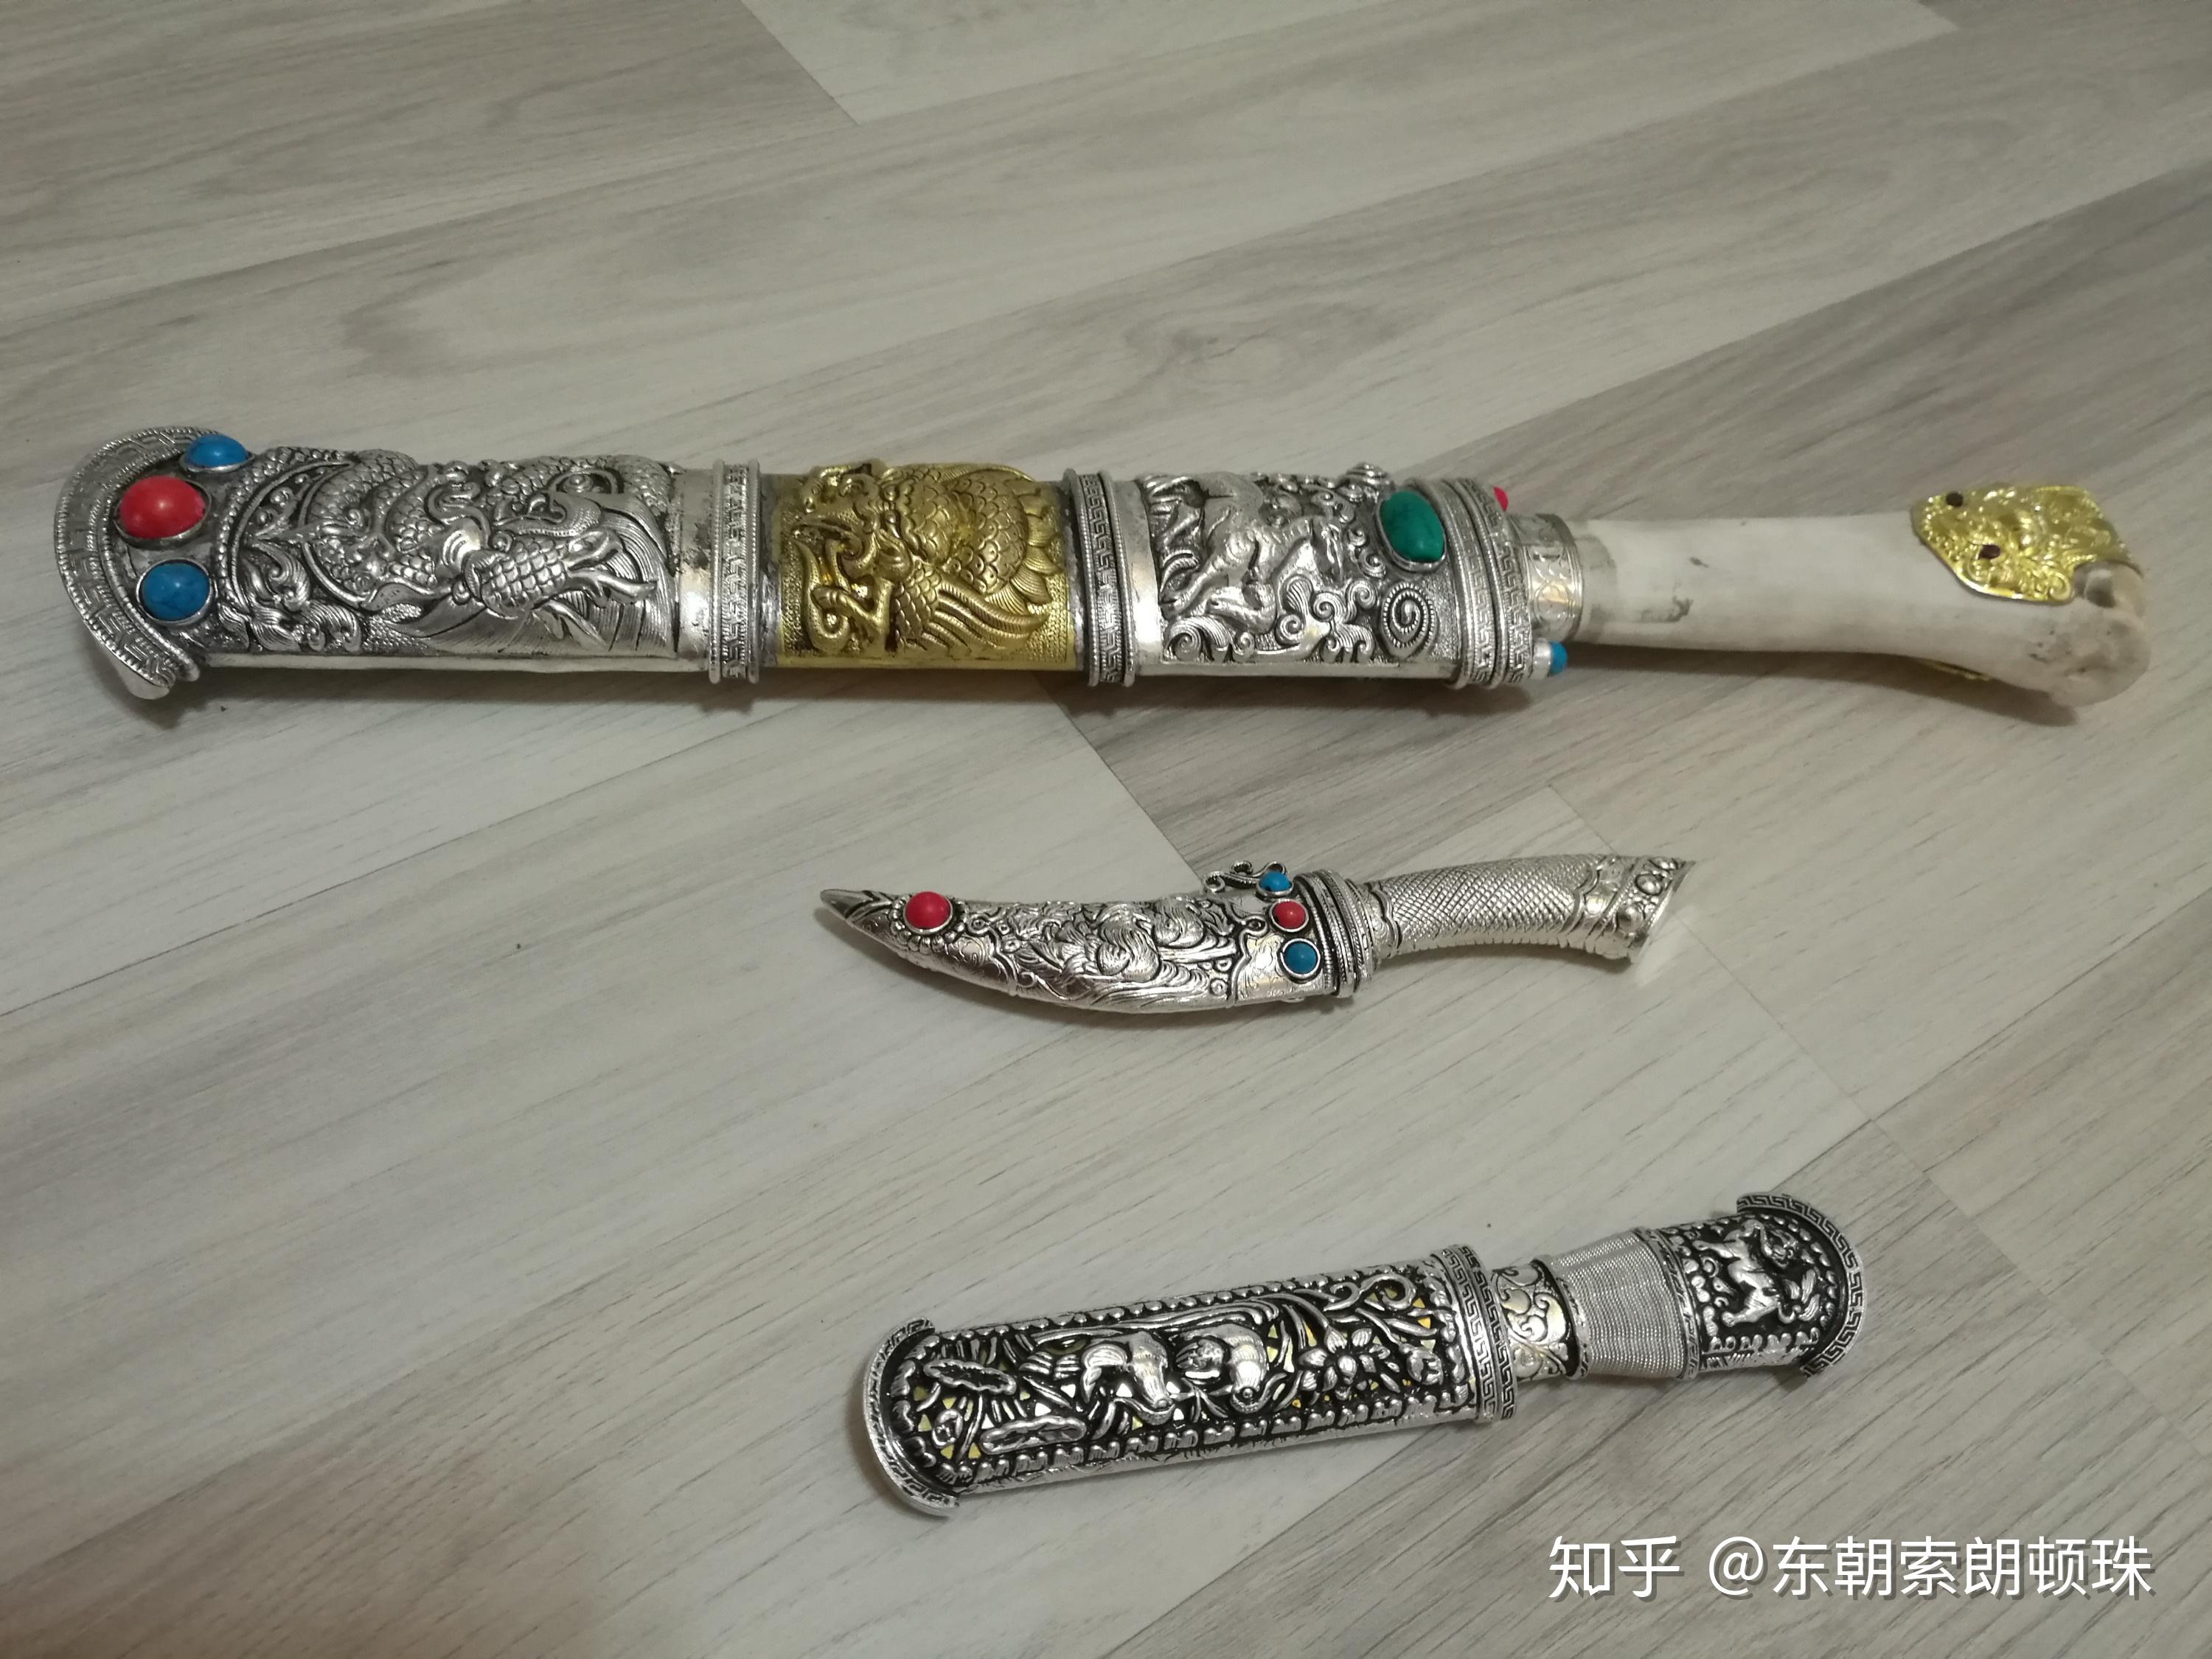 我在西藏牧民处获得赠予的一把西藏刀。那位可以帮鉴别下属于什么类的藏刀。？ - 知乎